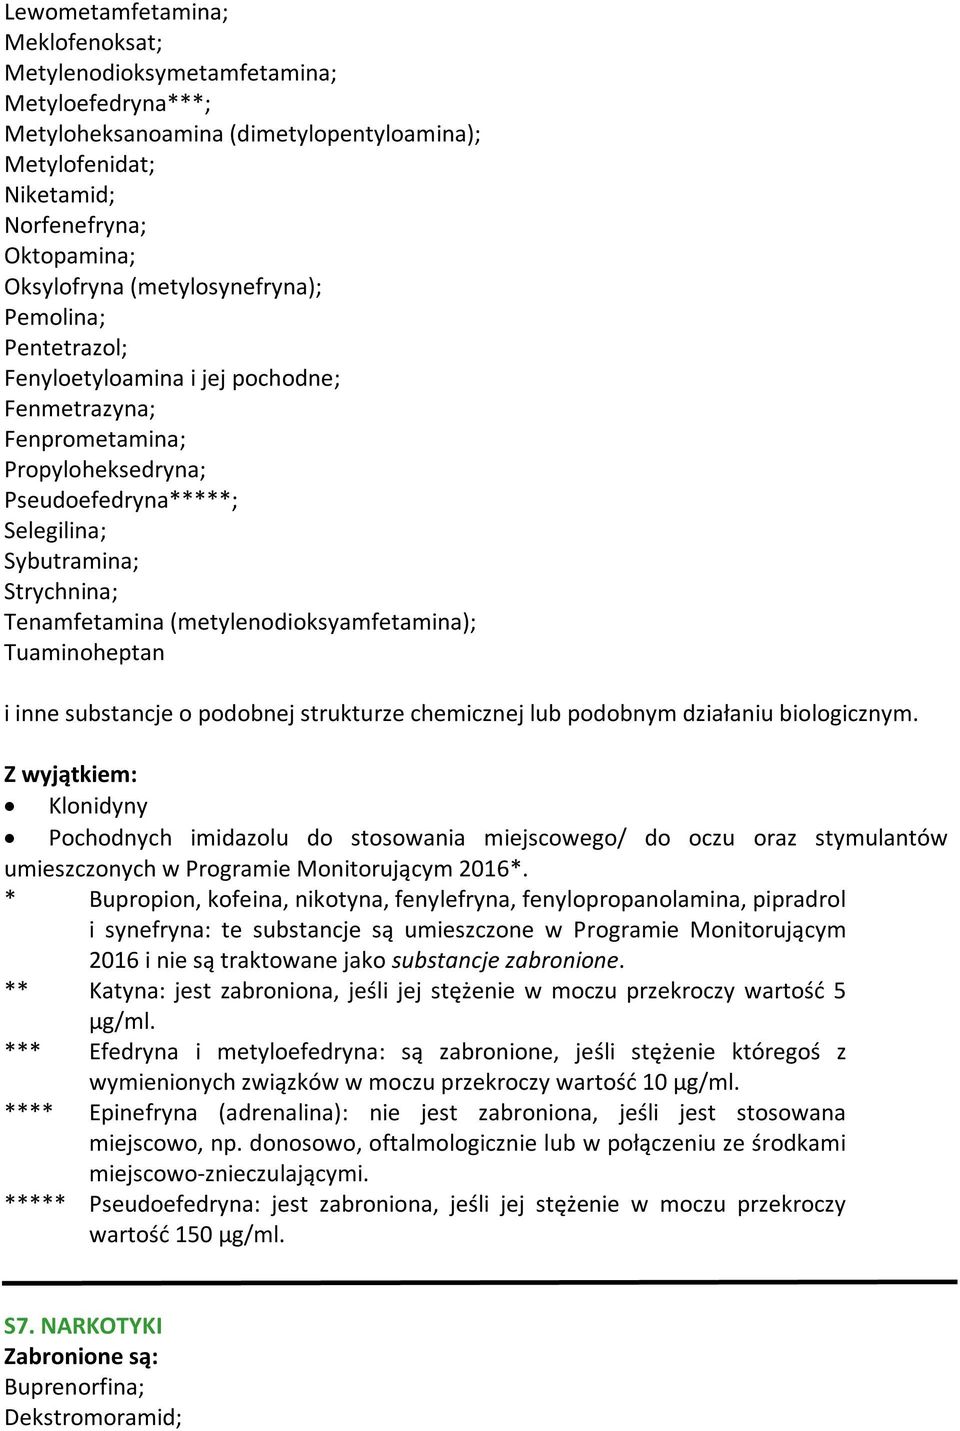 (metylenodioksyamfetamina); Tuaminoheptan i inne substancje o podobnej strukturze chemicznej lub podobnym działaniu biologicznym.